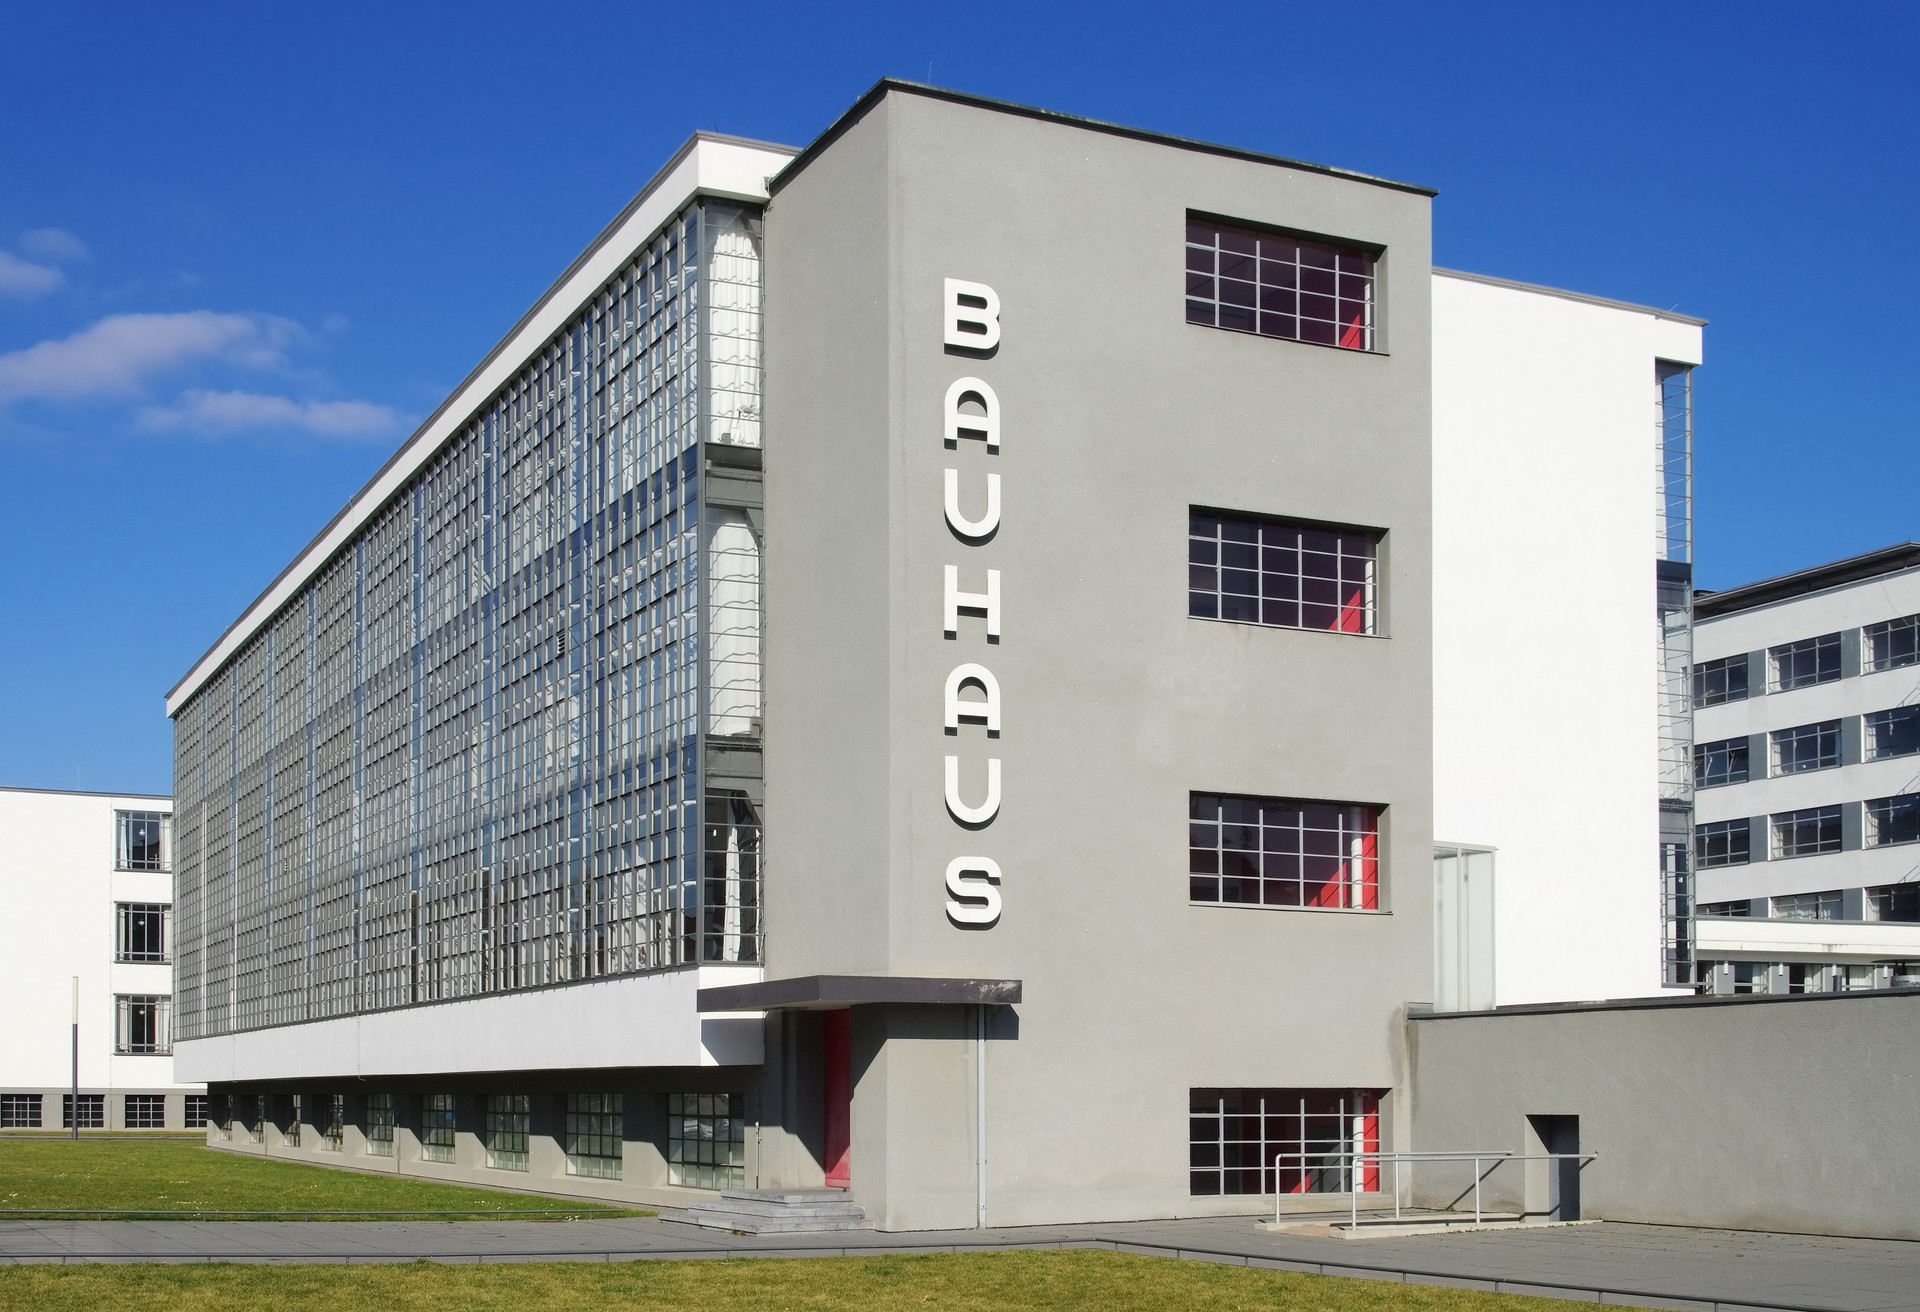 Het Bauhaus in Dessau werd gebouwd in 1925-26 en oogt nog altijd zeer modern